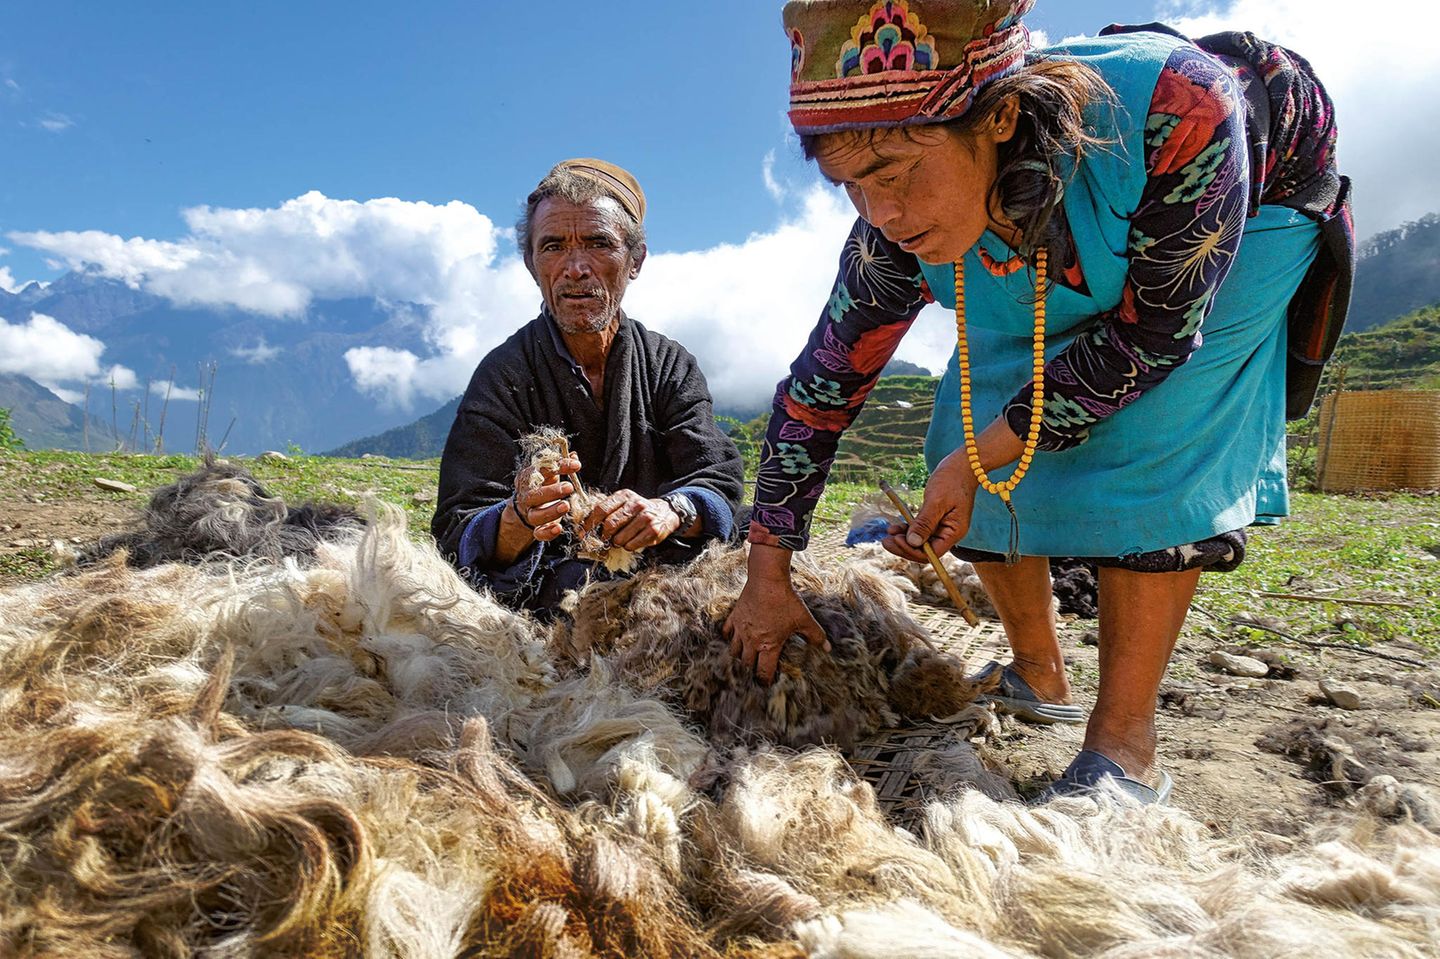 Der Wolle geht die (natürliche) Farbe aus    Nicht nur die Hirten in Gatlang haben ihre Wolle bisher traditionell mit pflanzlichen Farben gefärbt. Nun fehlen die Pflanzen bzw. das Wachstum hat dramatisch abgenommen, sodass sich die Suche kaum noch lohnt. Die Farben werden mittlerweile in Kathmandu als chemische Produkte gekauft. Damit geht eine lange Tradition zu Ende. 